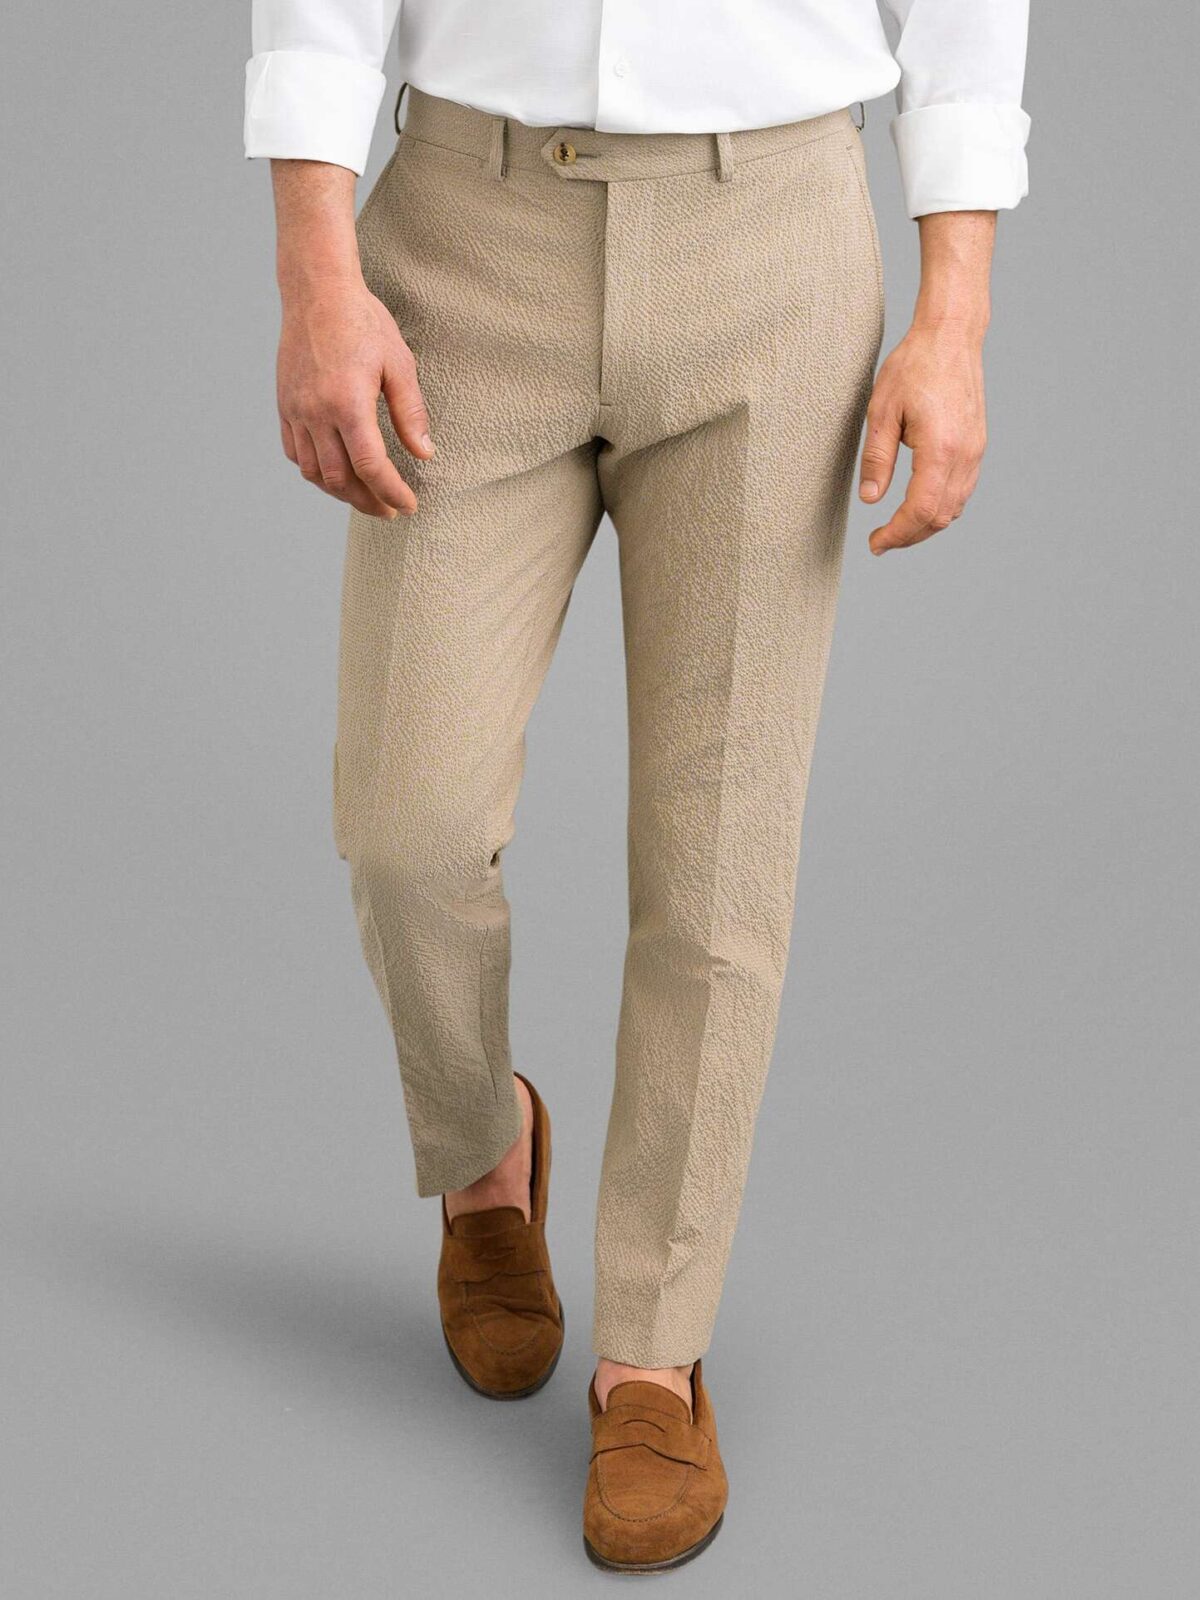 Mens Ankle Length Formal Pant at Rs 420 | Men Slim fit Trousers in Mumbai |  ID: 20057315173